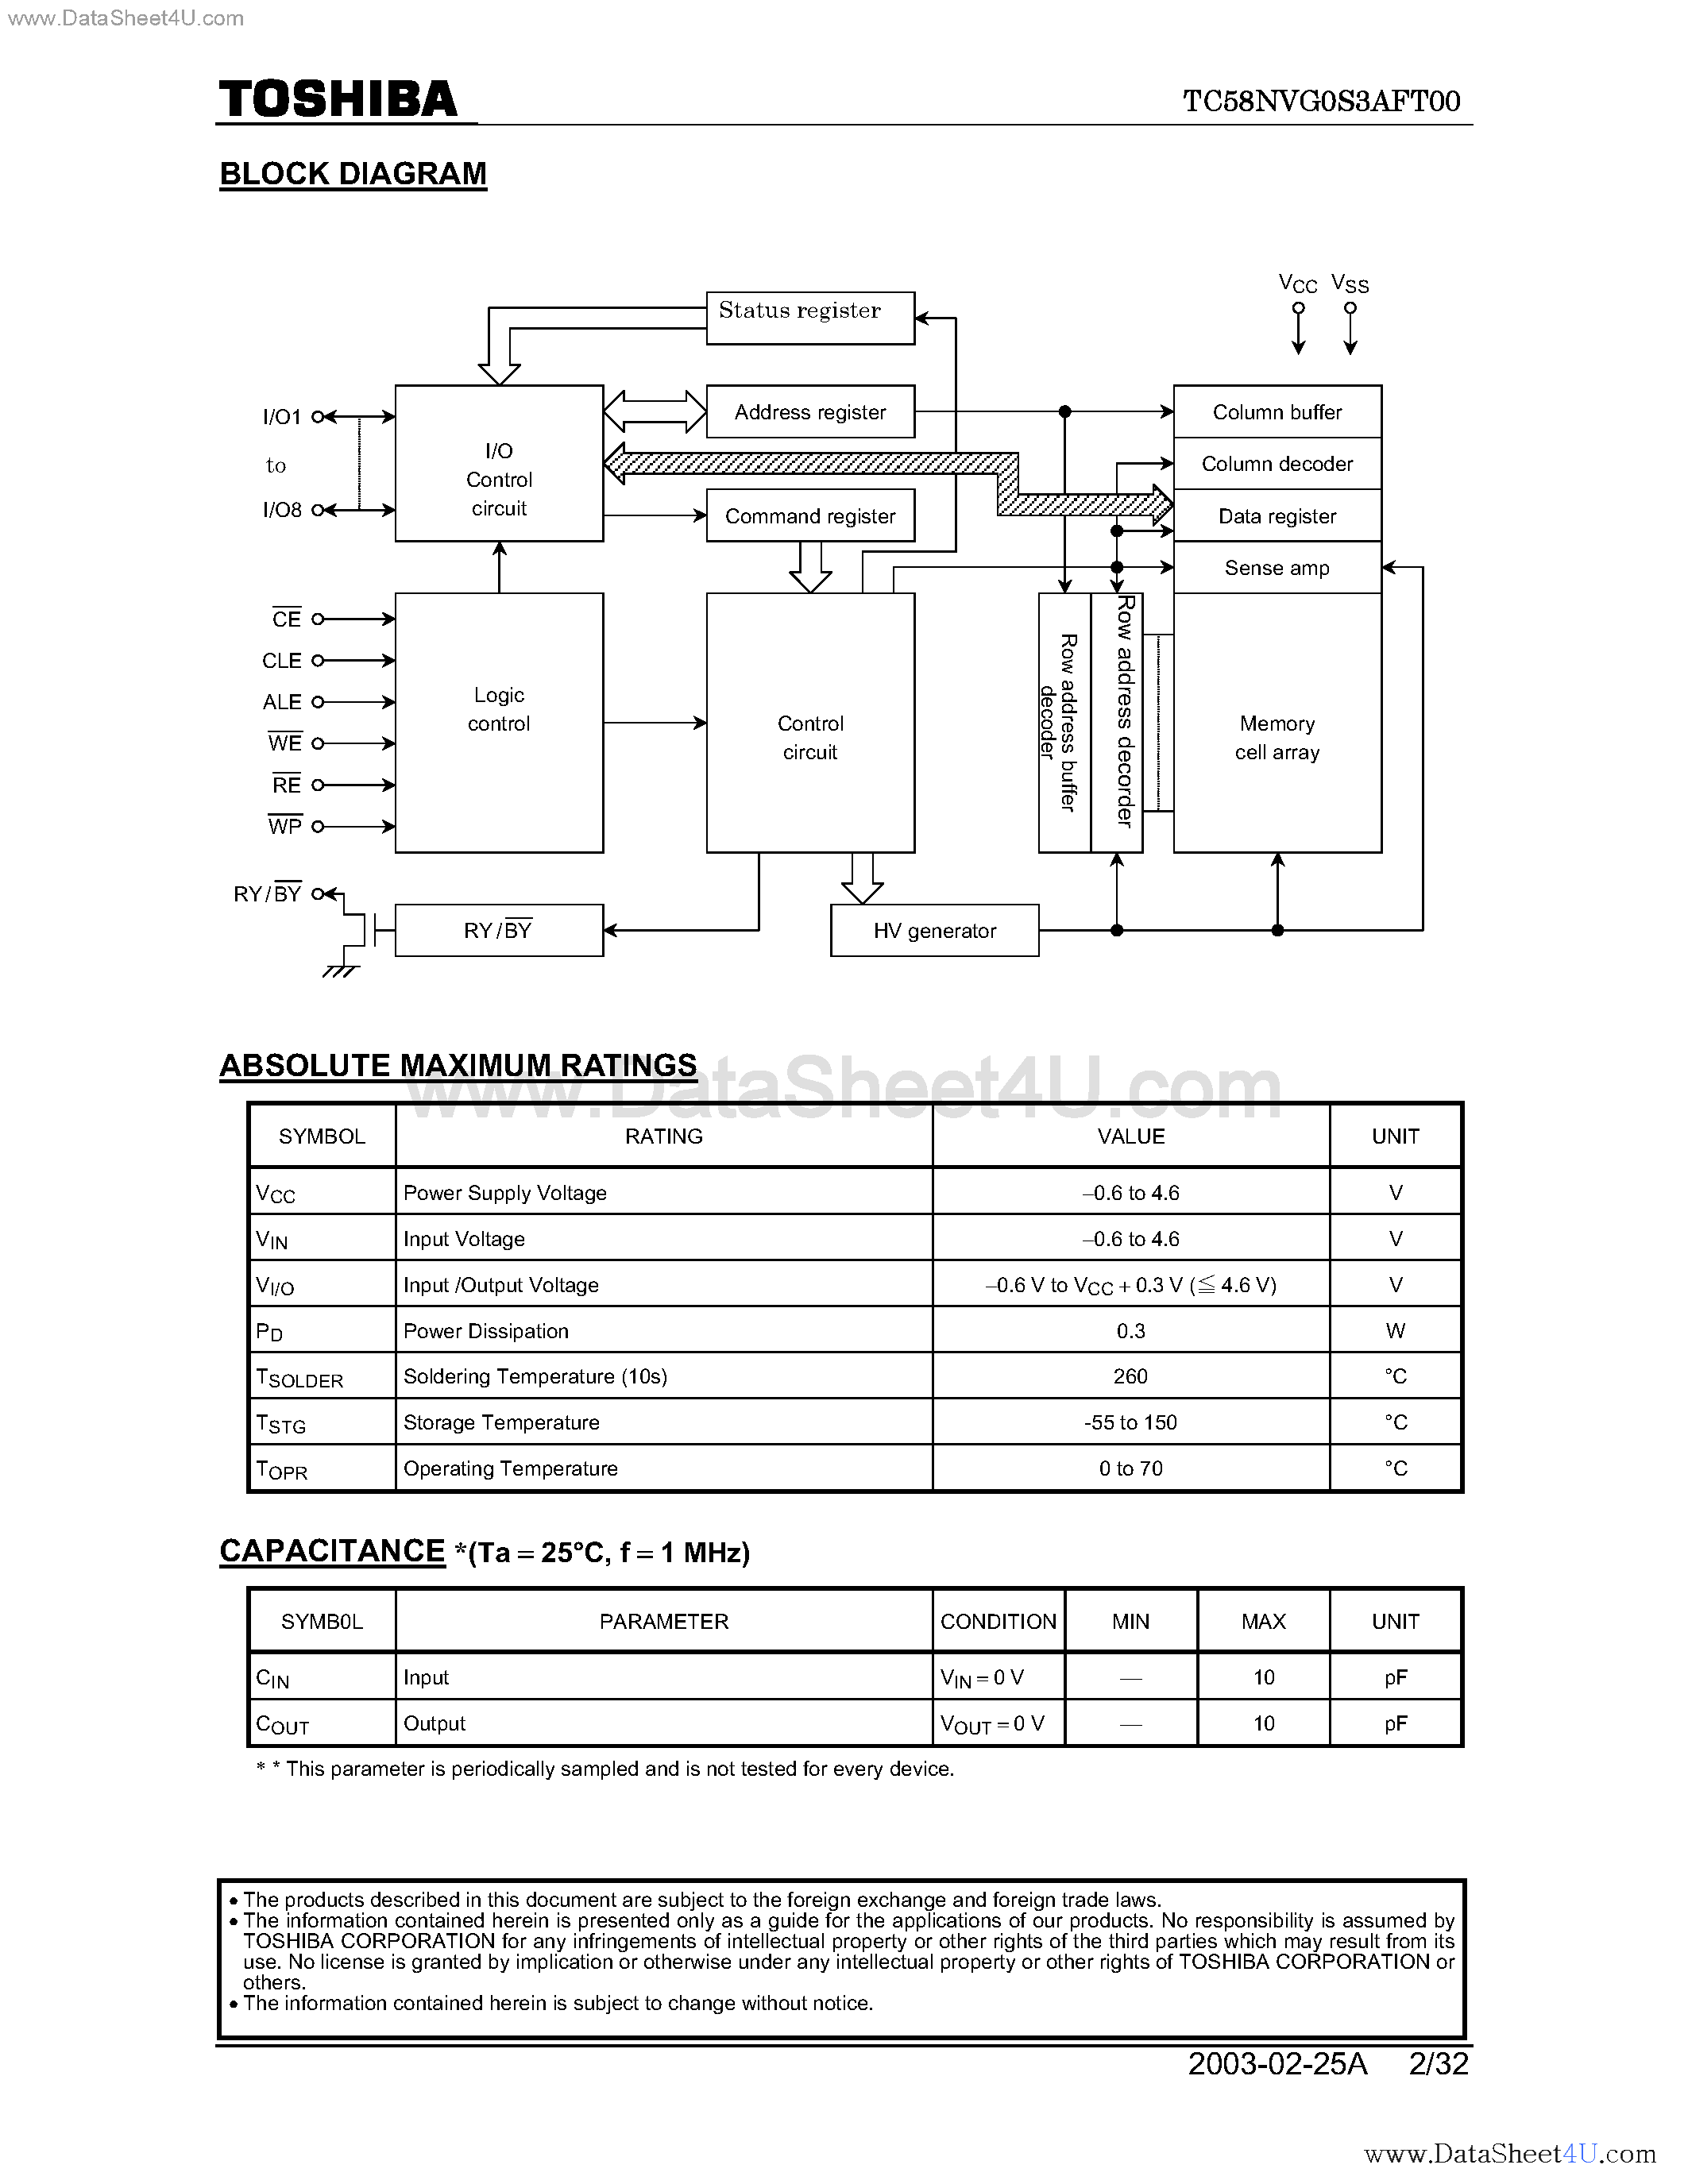 Даташит TC58NVG0S3AFT00 - 1 GBit CMOS NAND EPROM страница 2